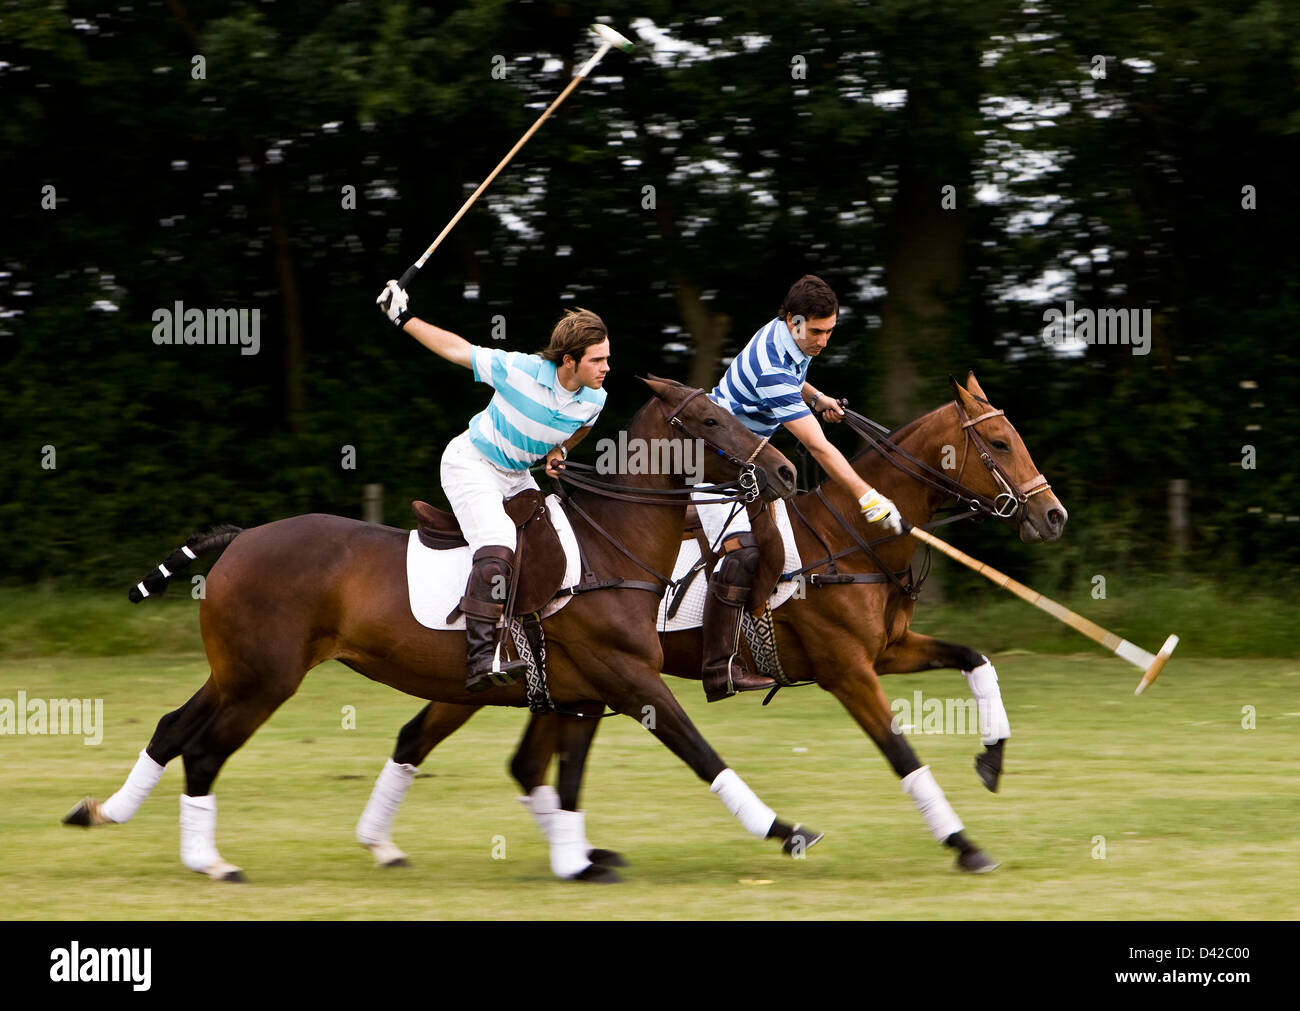 Joueurs de Polo à cheval maillets oscillante Banque D'Images